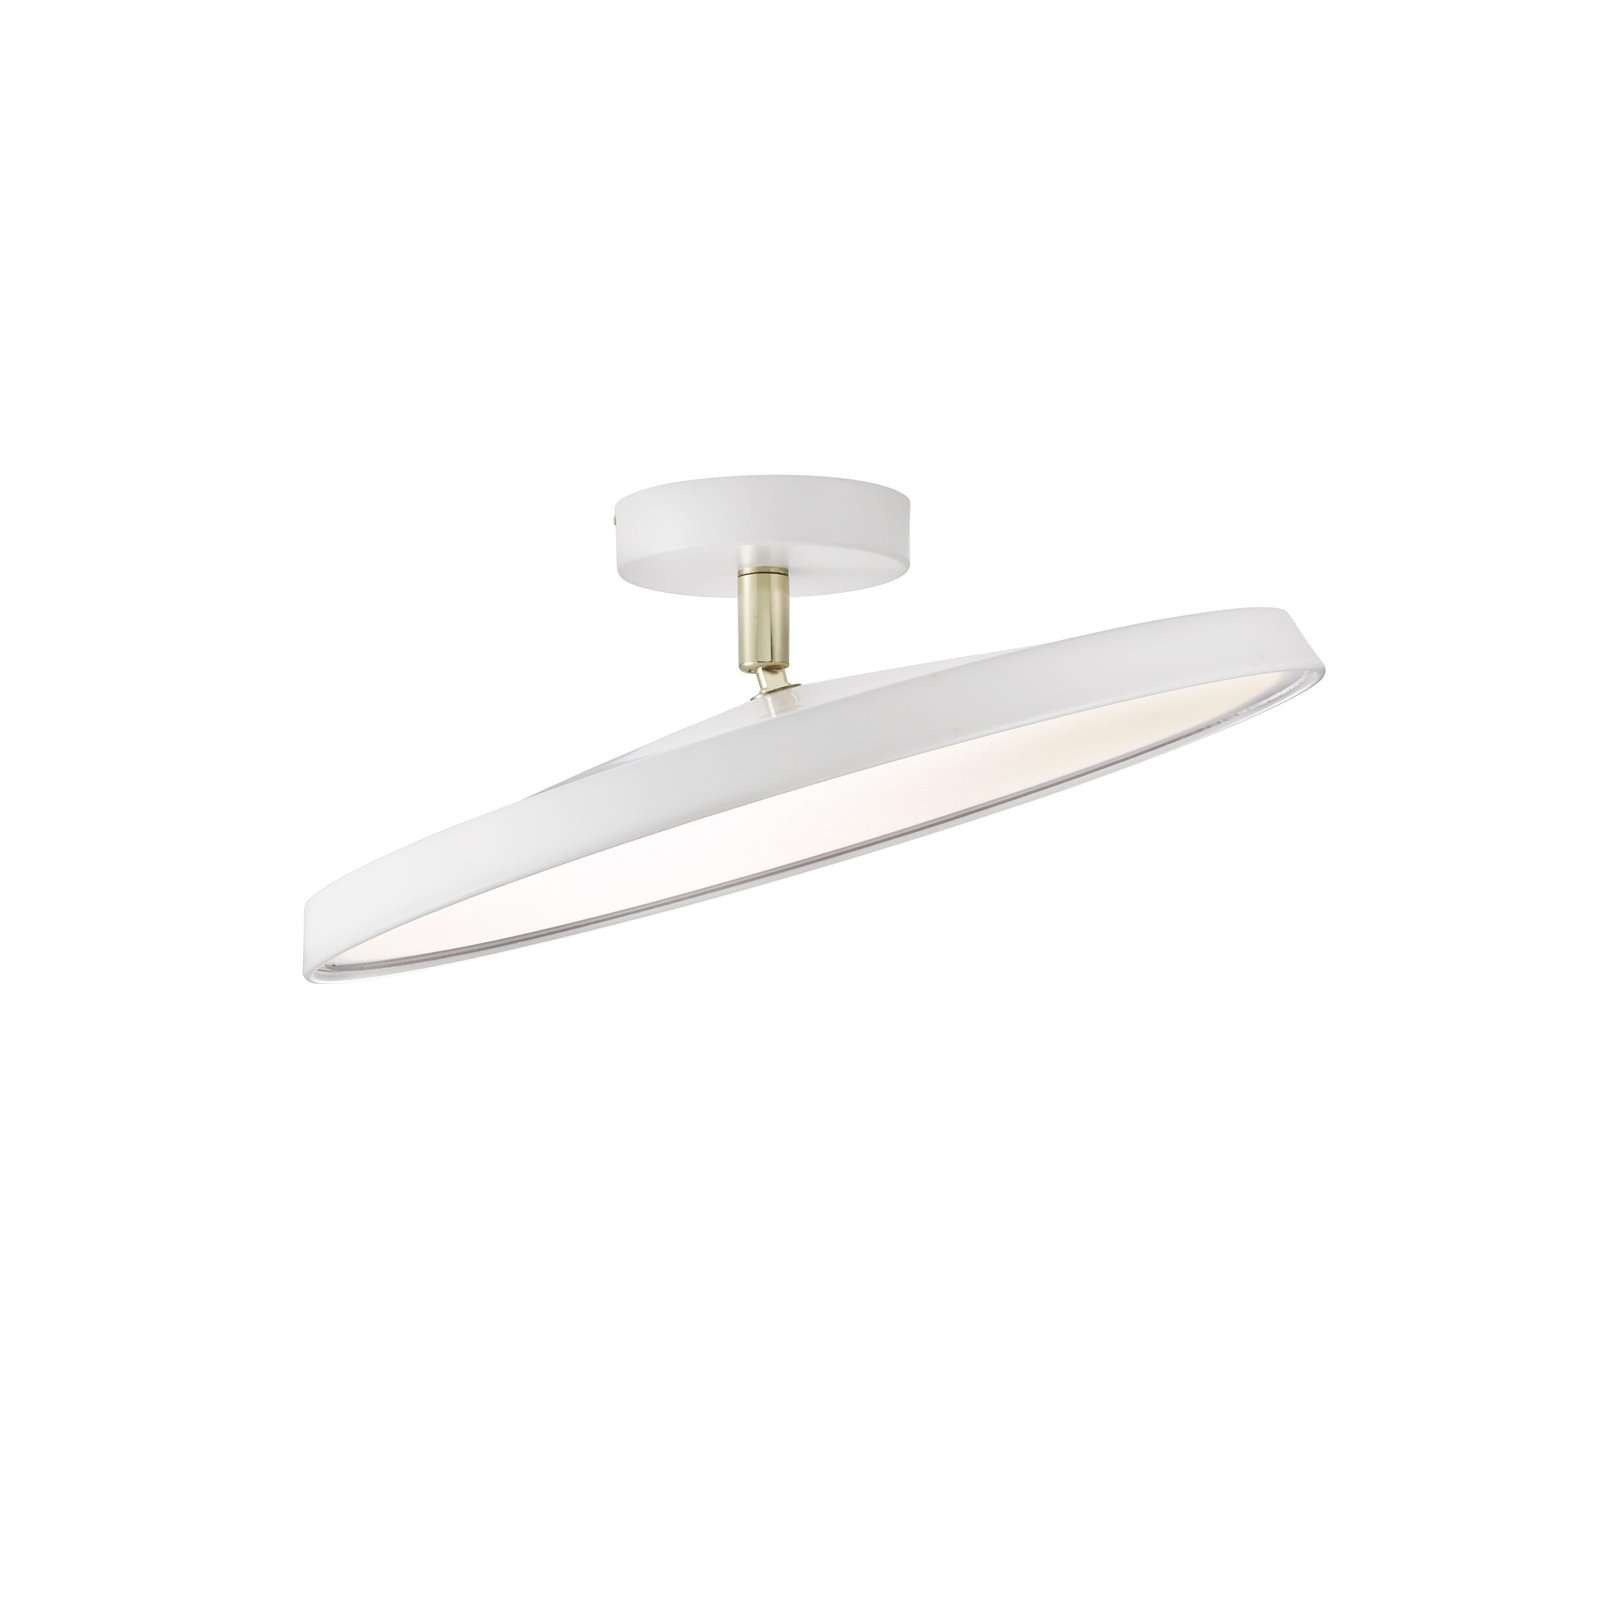 LED stropné svietidlo Kaito 2 Pro, Ø 40 cm, biele, rozstupy